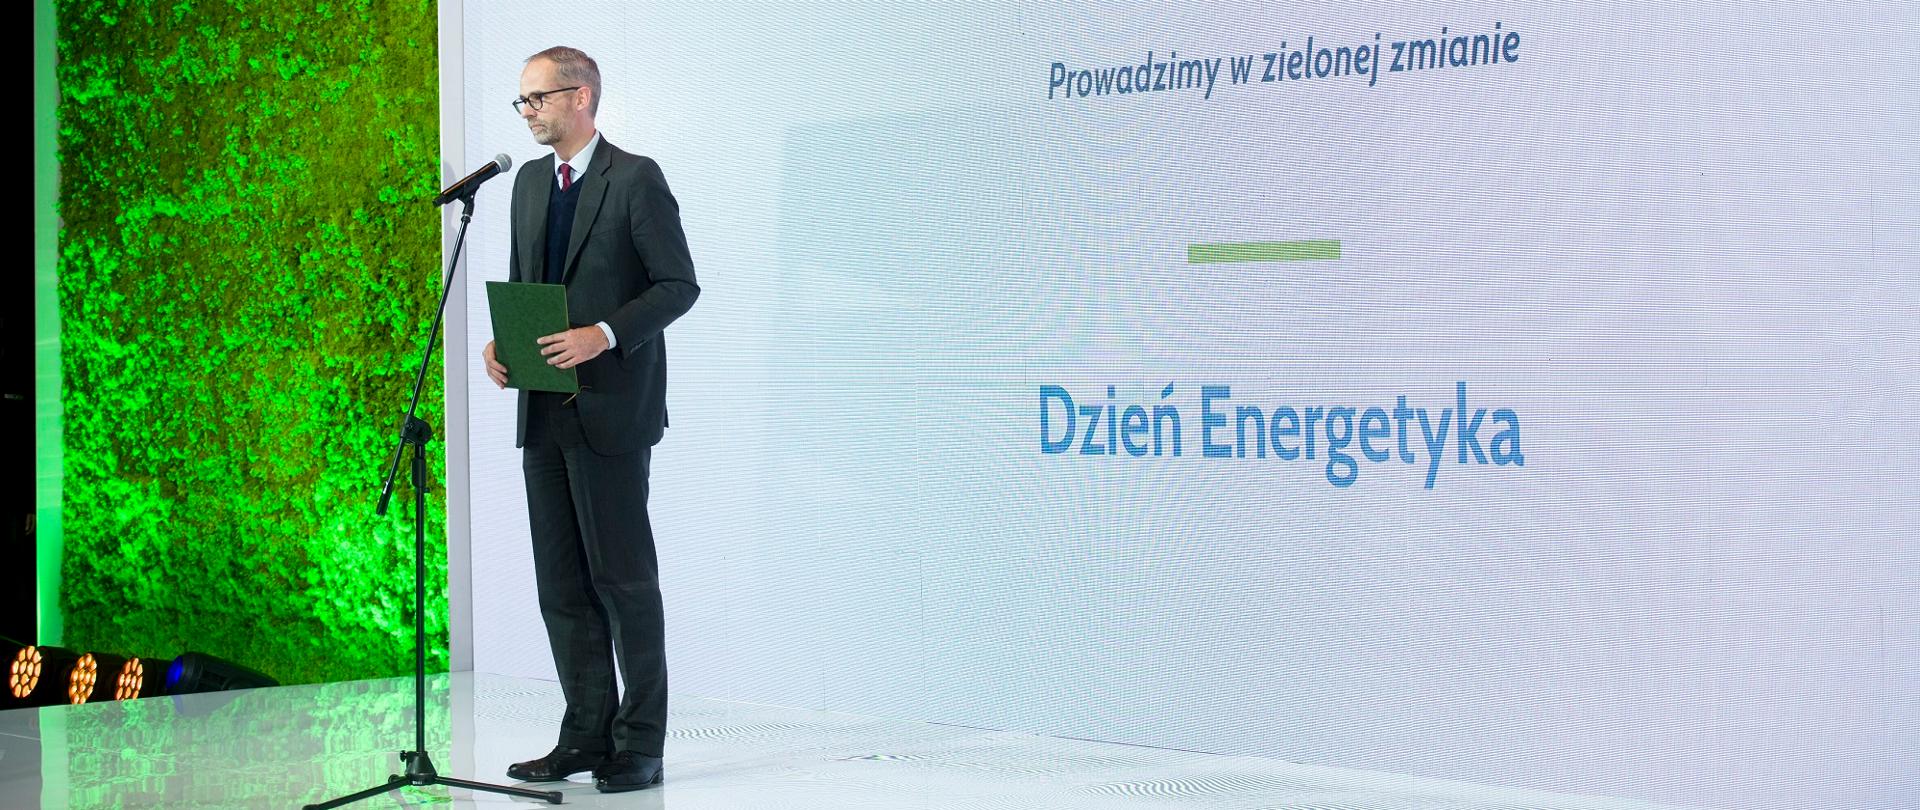 Wiceminister Guibourgé-Czetwertyński wręczył honorowe odznaki za zasługi dla energetyki